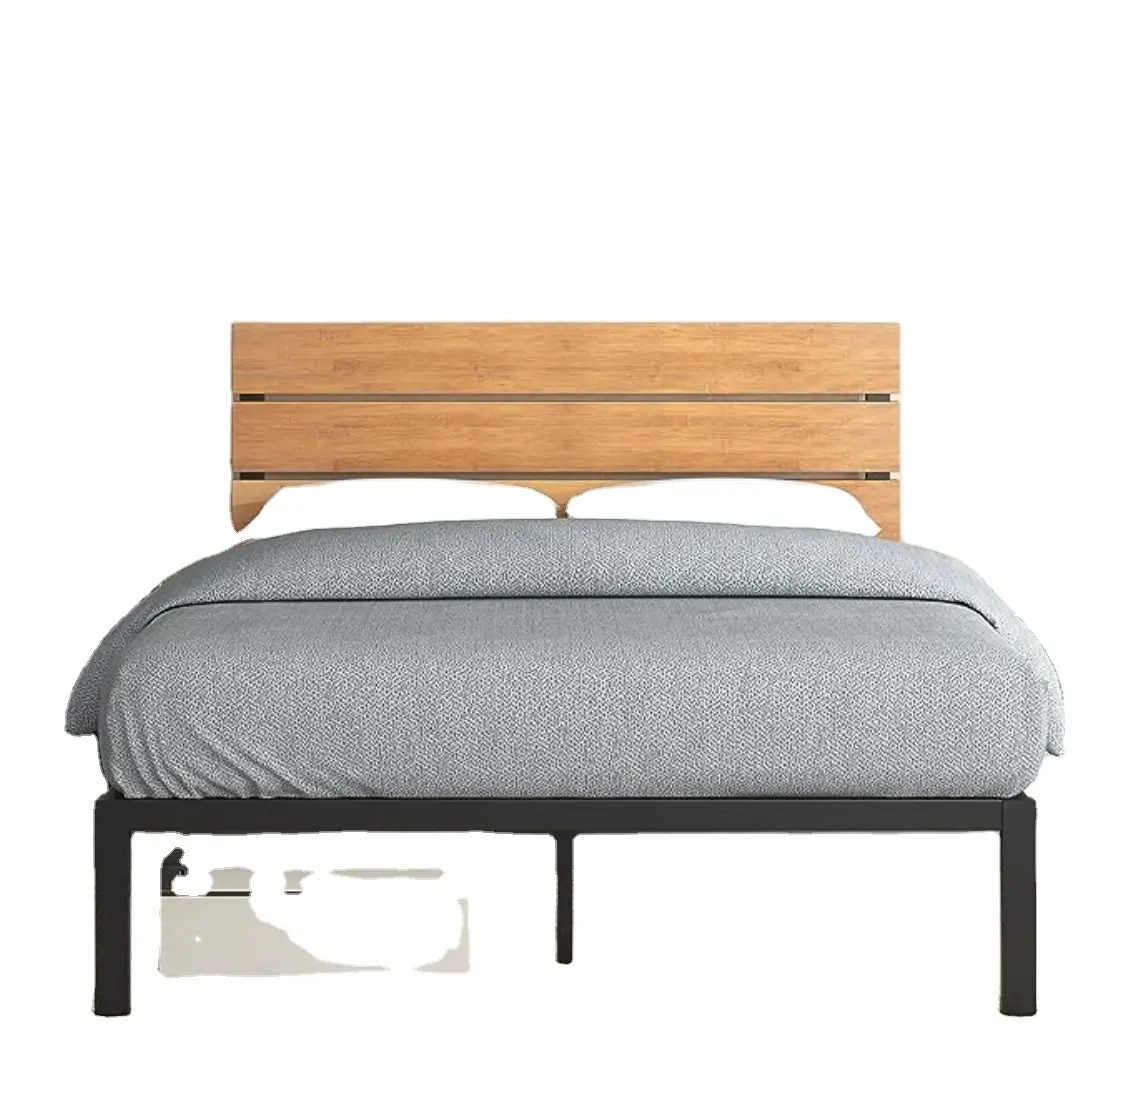 Cadre de lit à plateforme en métal et bambou, support à lattes en bois, pas de sommier nécessaire, assemblage facile, Queen